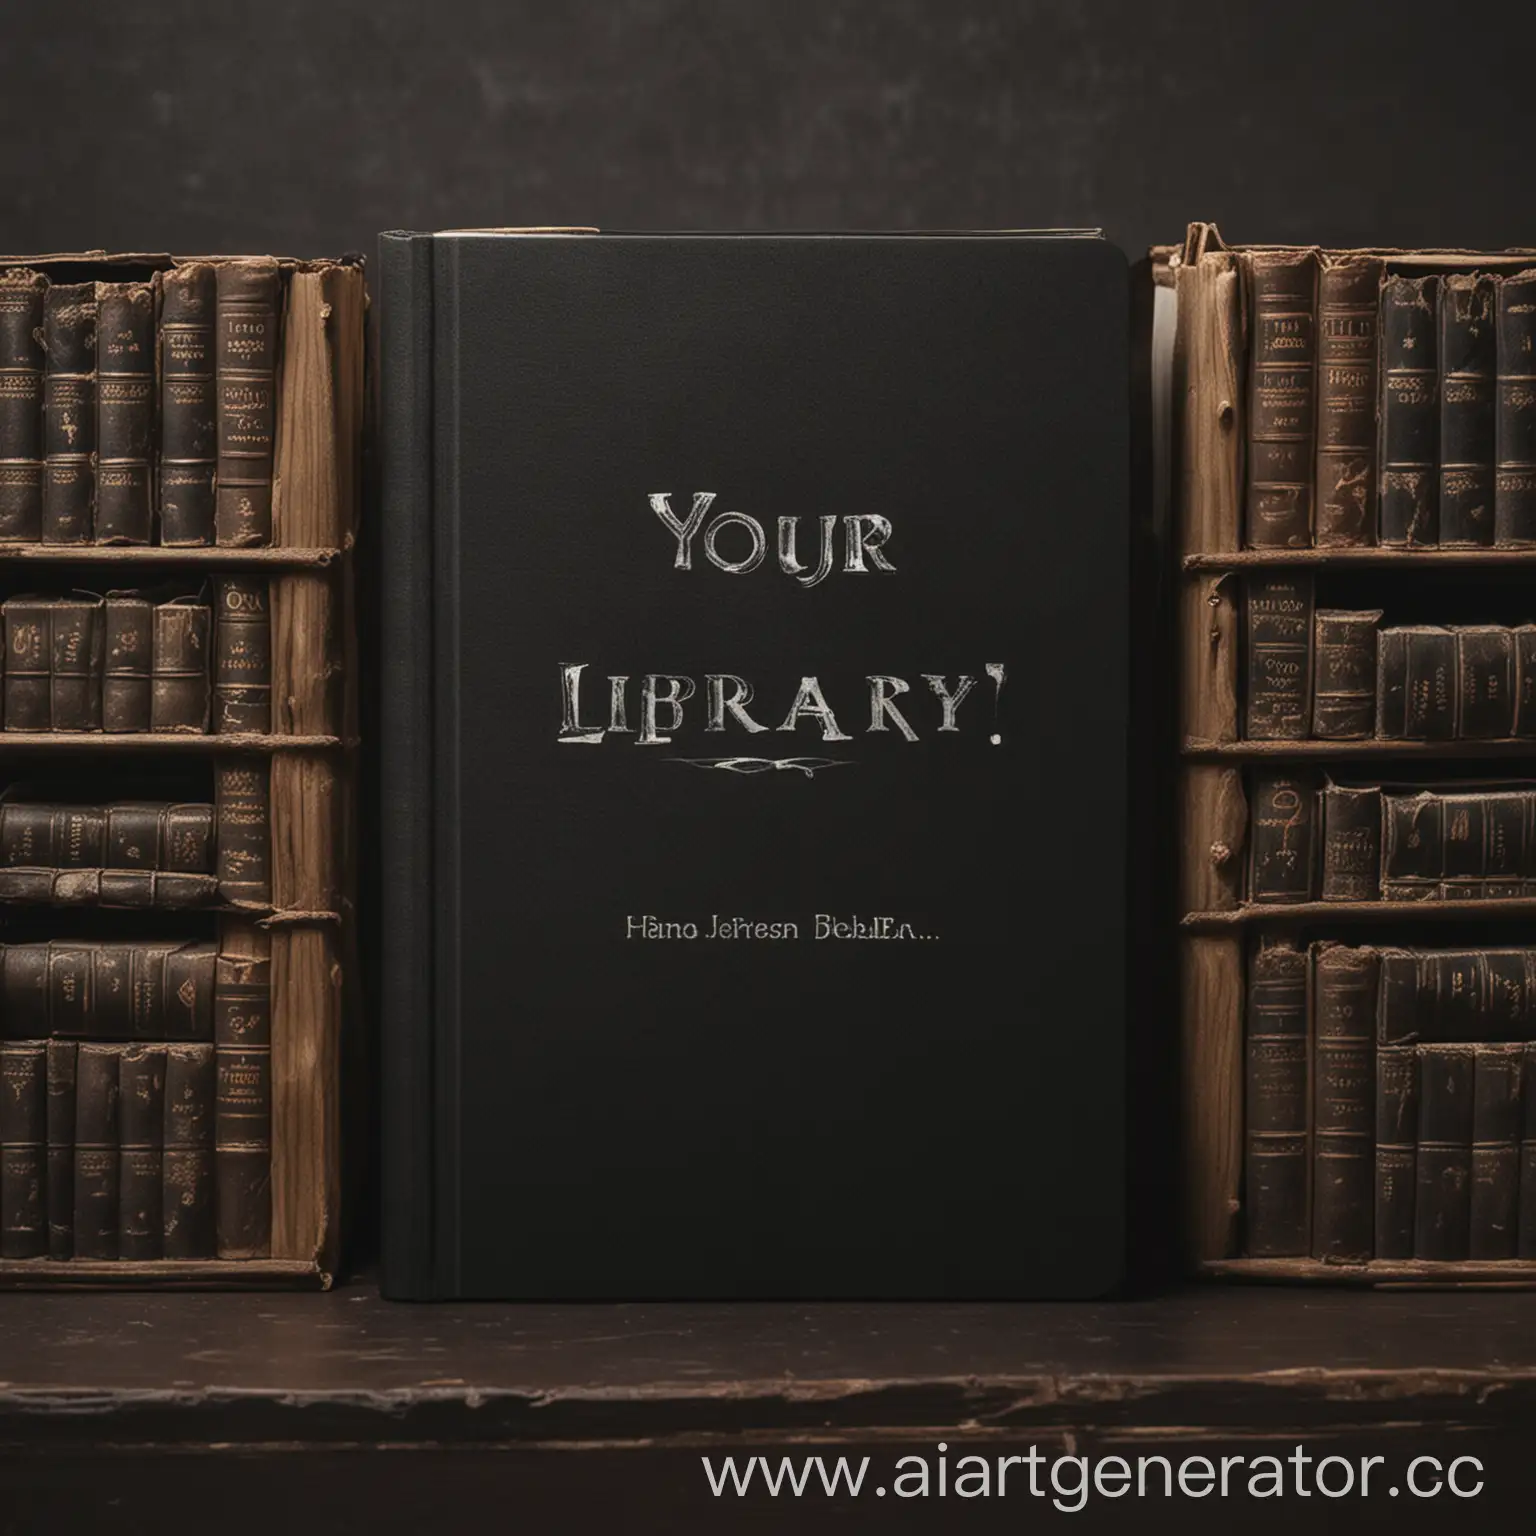 тёмная обложка книги с надписью "your library"